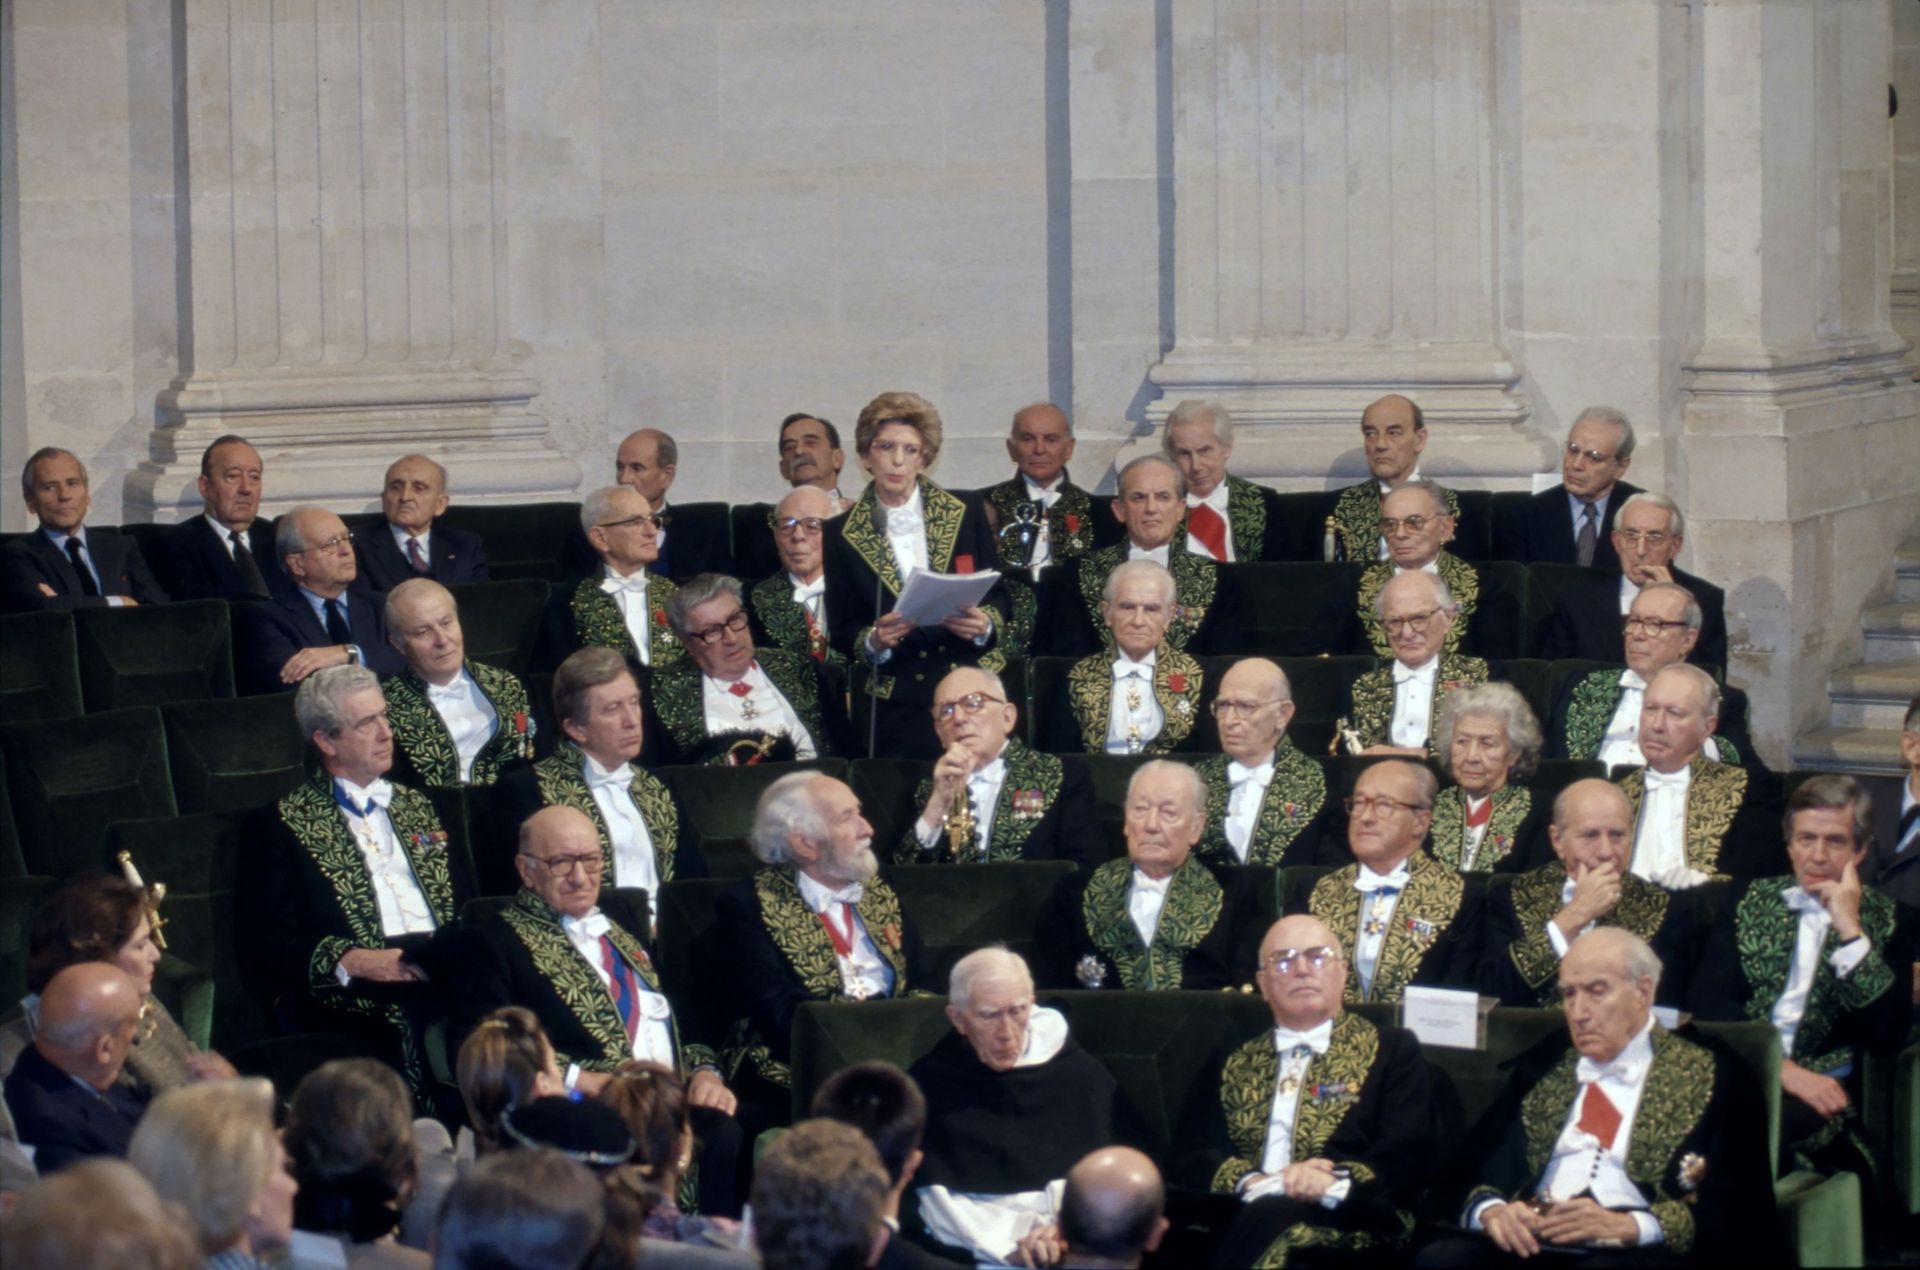 Les membres de l’Académie française sont parmi les plus grands défenseurs de la langue de Molière… Hélène Carrère d’Encausse durant son discours d’entrée, 1991.